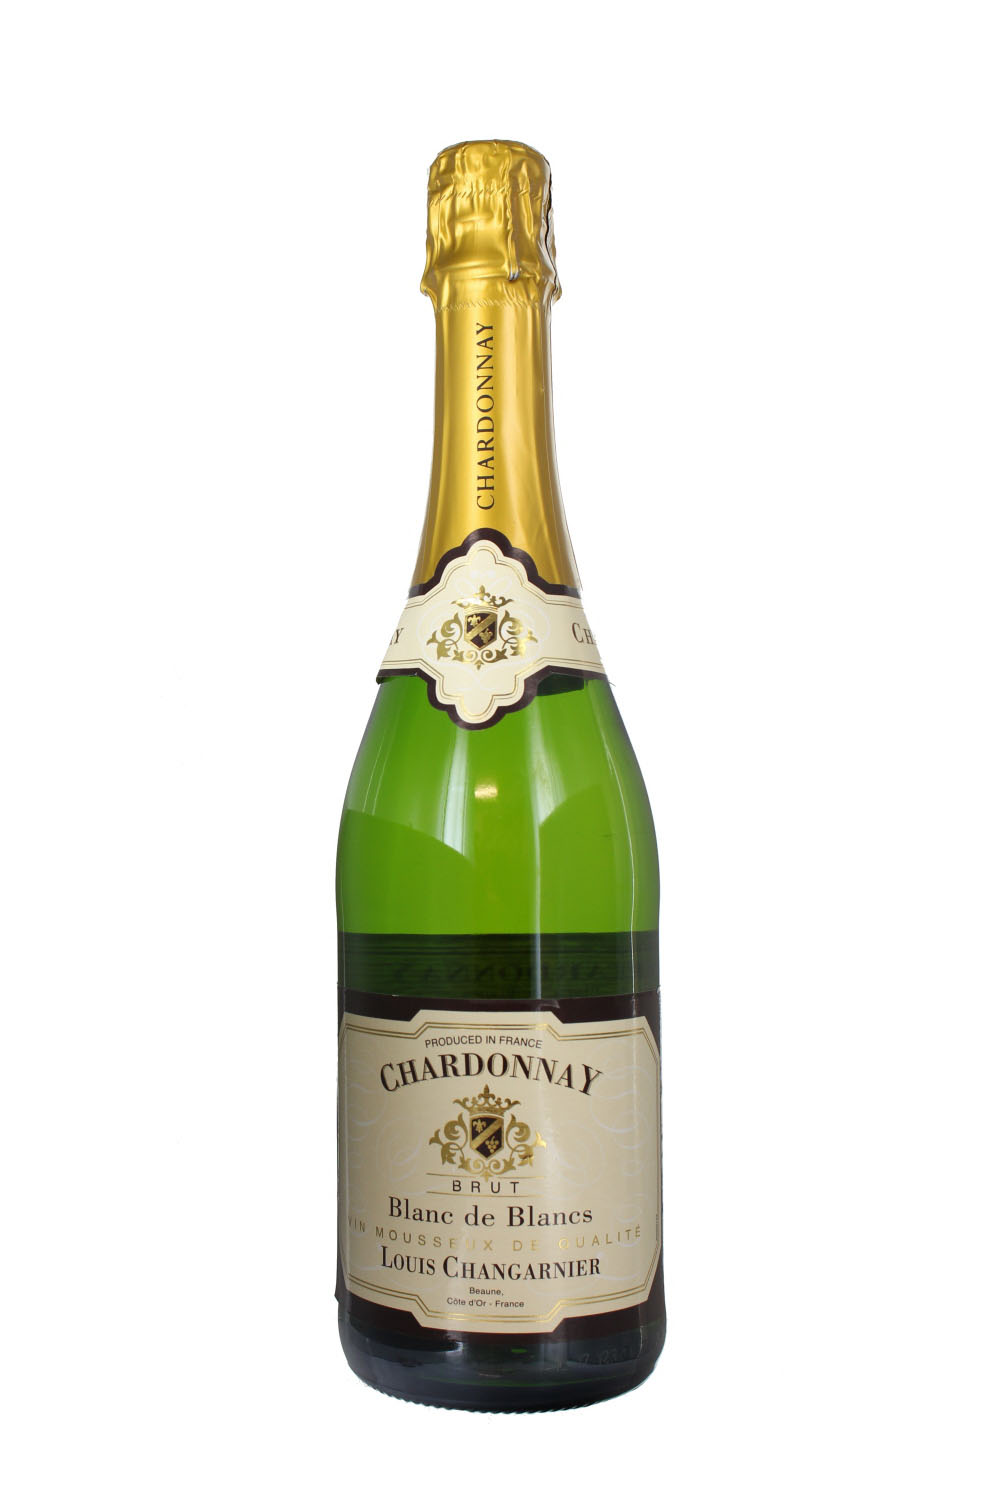 N.V. Louis Changarnier Chardonnay Brut,  La Compagnie Vins d'Autrefois, France (Case)